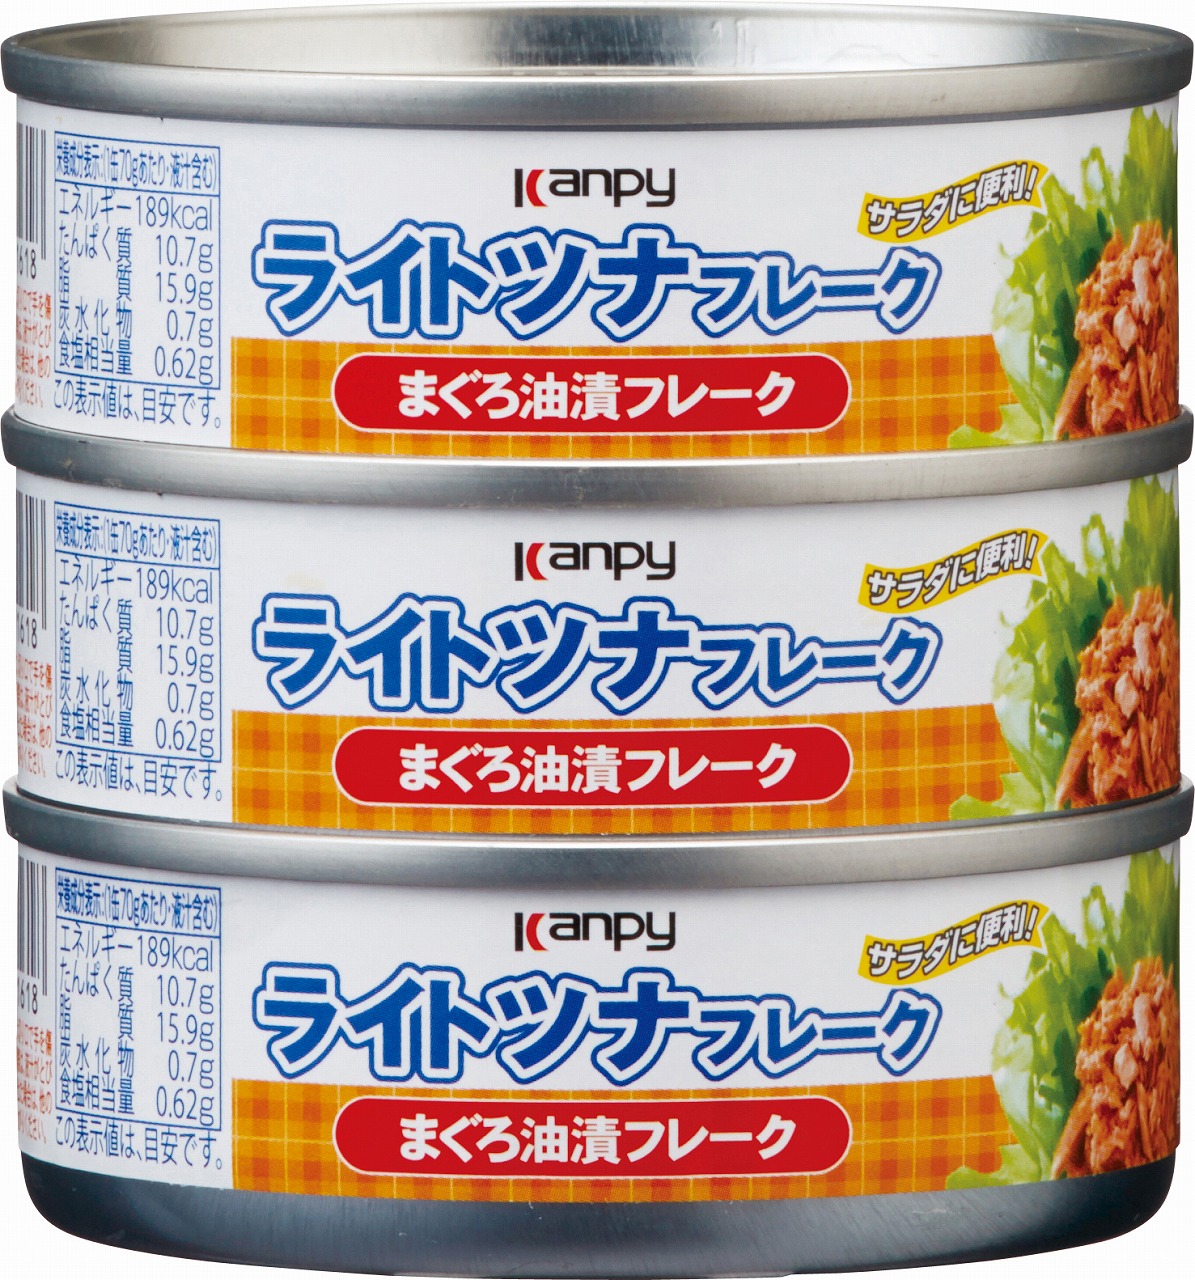 キョクヨー ライトフレーク シーチキン ツナ缶 缶詰 大型缶